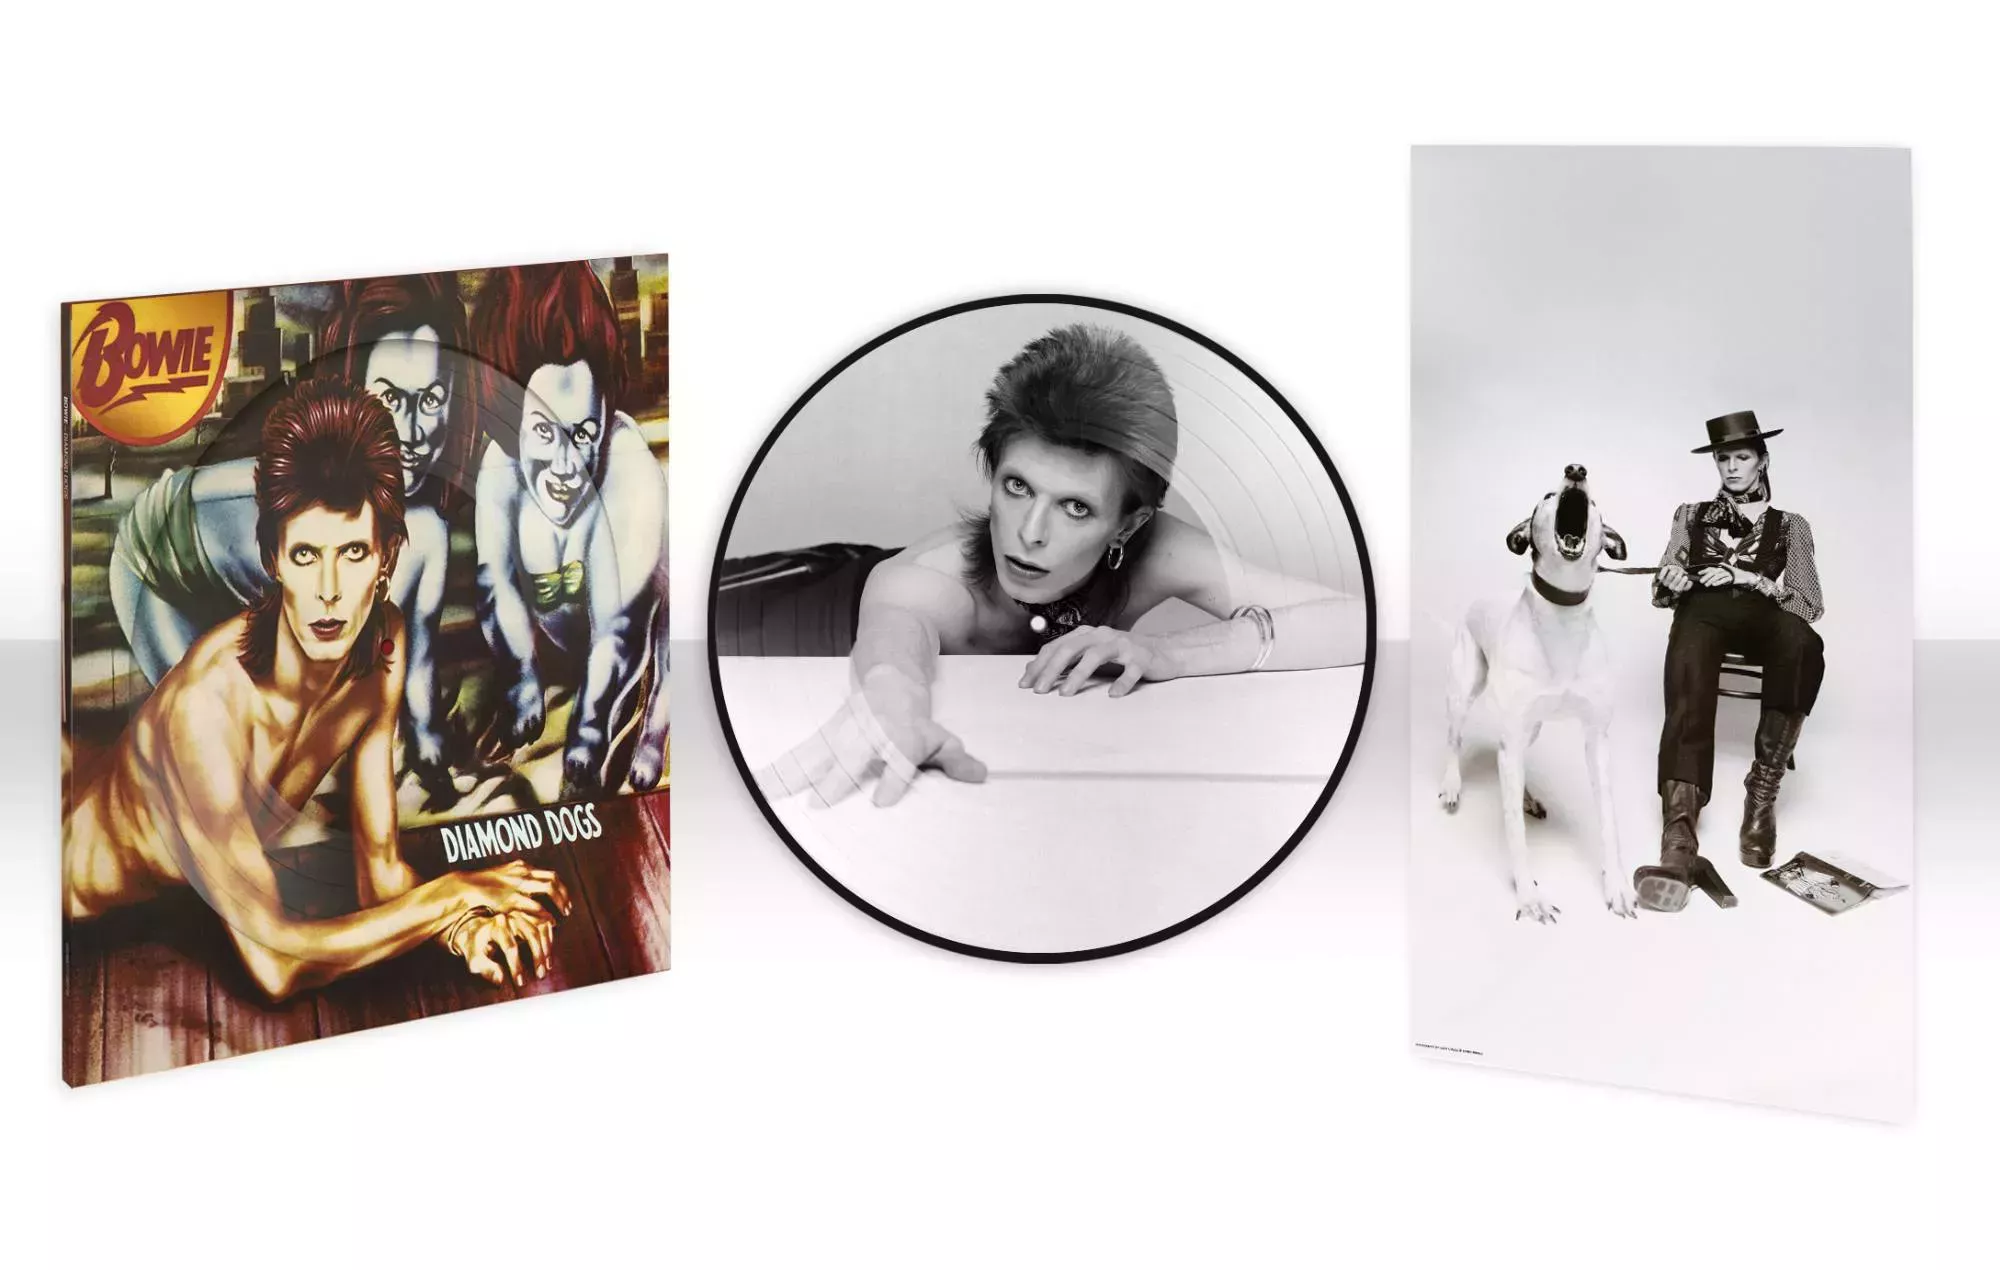 Diamond Dogs' de David Bowie se publicará en un LP de media velocidad y un picture disc con motivo del 50 aniversario